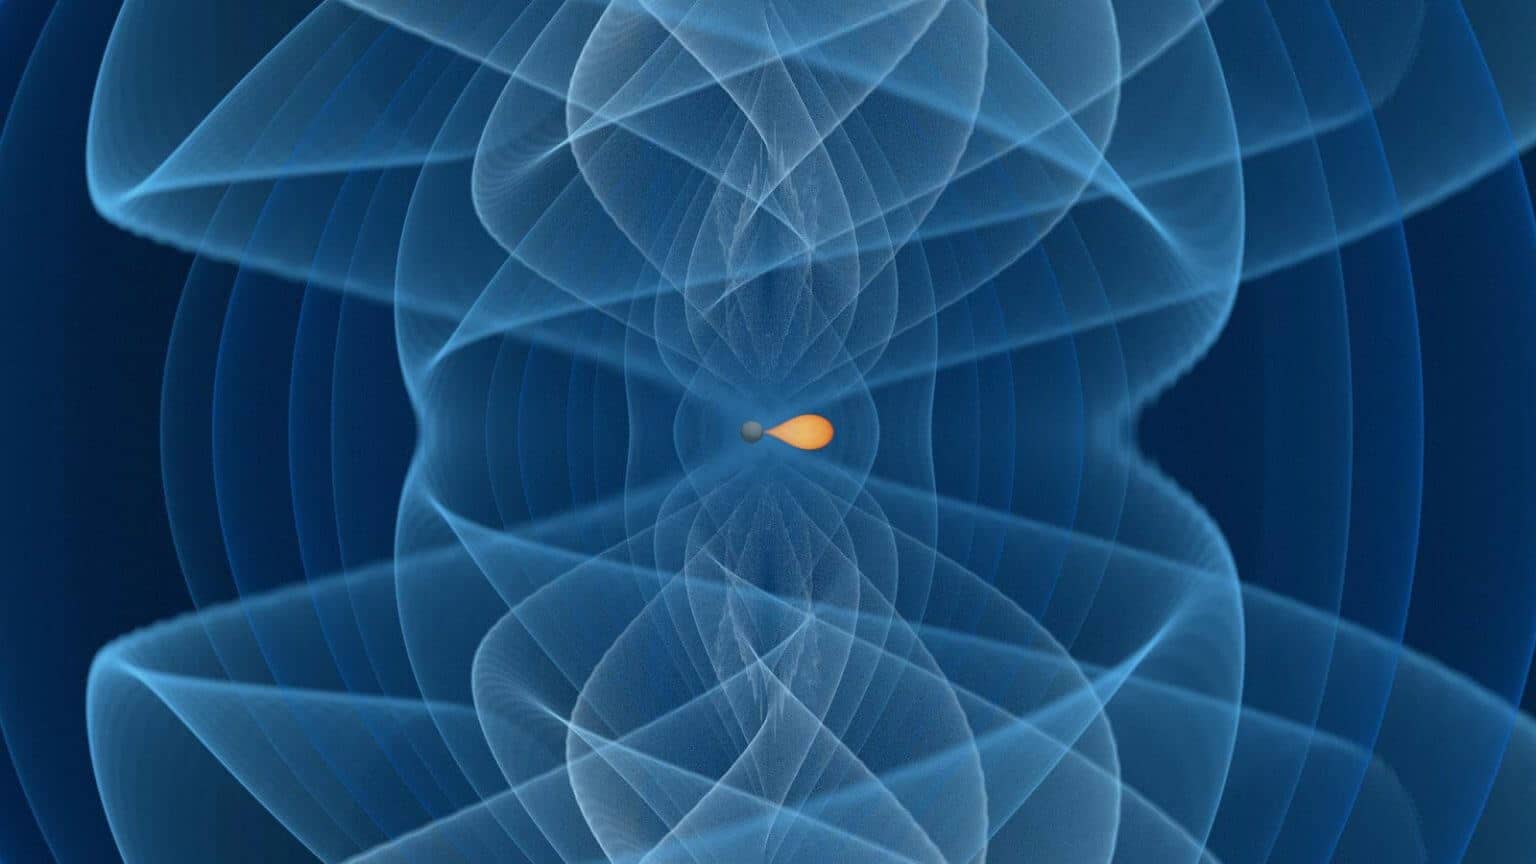 وتظهر الصورة اندماج ثقب أسود من أسفل فجوة الكتلة (السطح باللون الرمادي الداكن) مع نجم نيوتروني تتراوح ألوانه بين البرتقالي الداكن (مليون طن لكل متر مكعب) إلى الأبيض (600 مليون طن لكل متر مكعب). يتم تمثيل إشارة موجة الجاذبية بسلسلة من قيم السعة المتعدية للاستقطاب الإيجابي باستخدام الألوان من الأزرق الداكن إلى السماوي. ائتمان: آي. ماركين (جامعة بوتسدام)، تي. ديتريش (جامعة بوتسدام ومعهد ماكس بلانك لفيزياء الجاذبية)، إتش. فايفر، أ. بونانو (معهد ماكس بلانك لفيزياء الجاذبية)